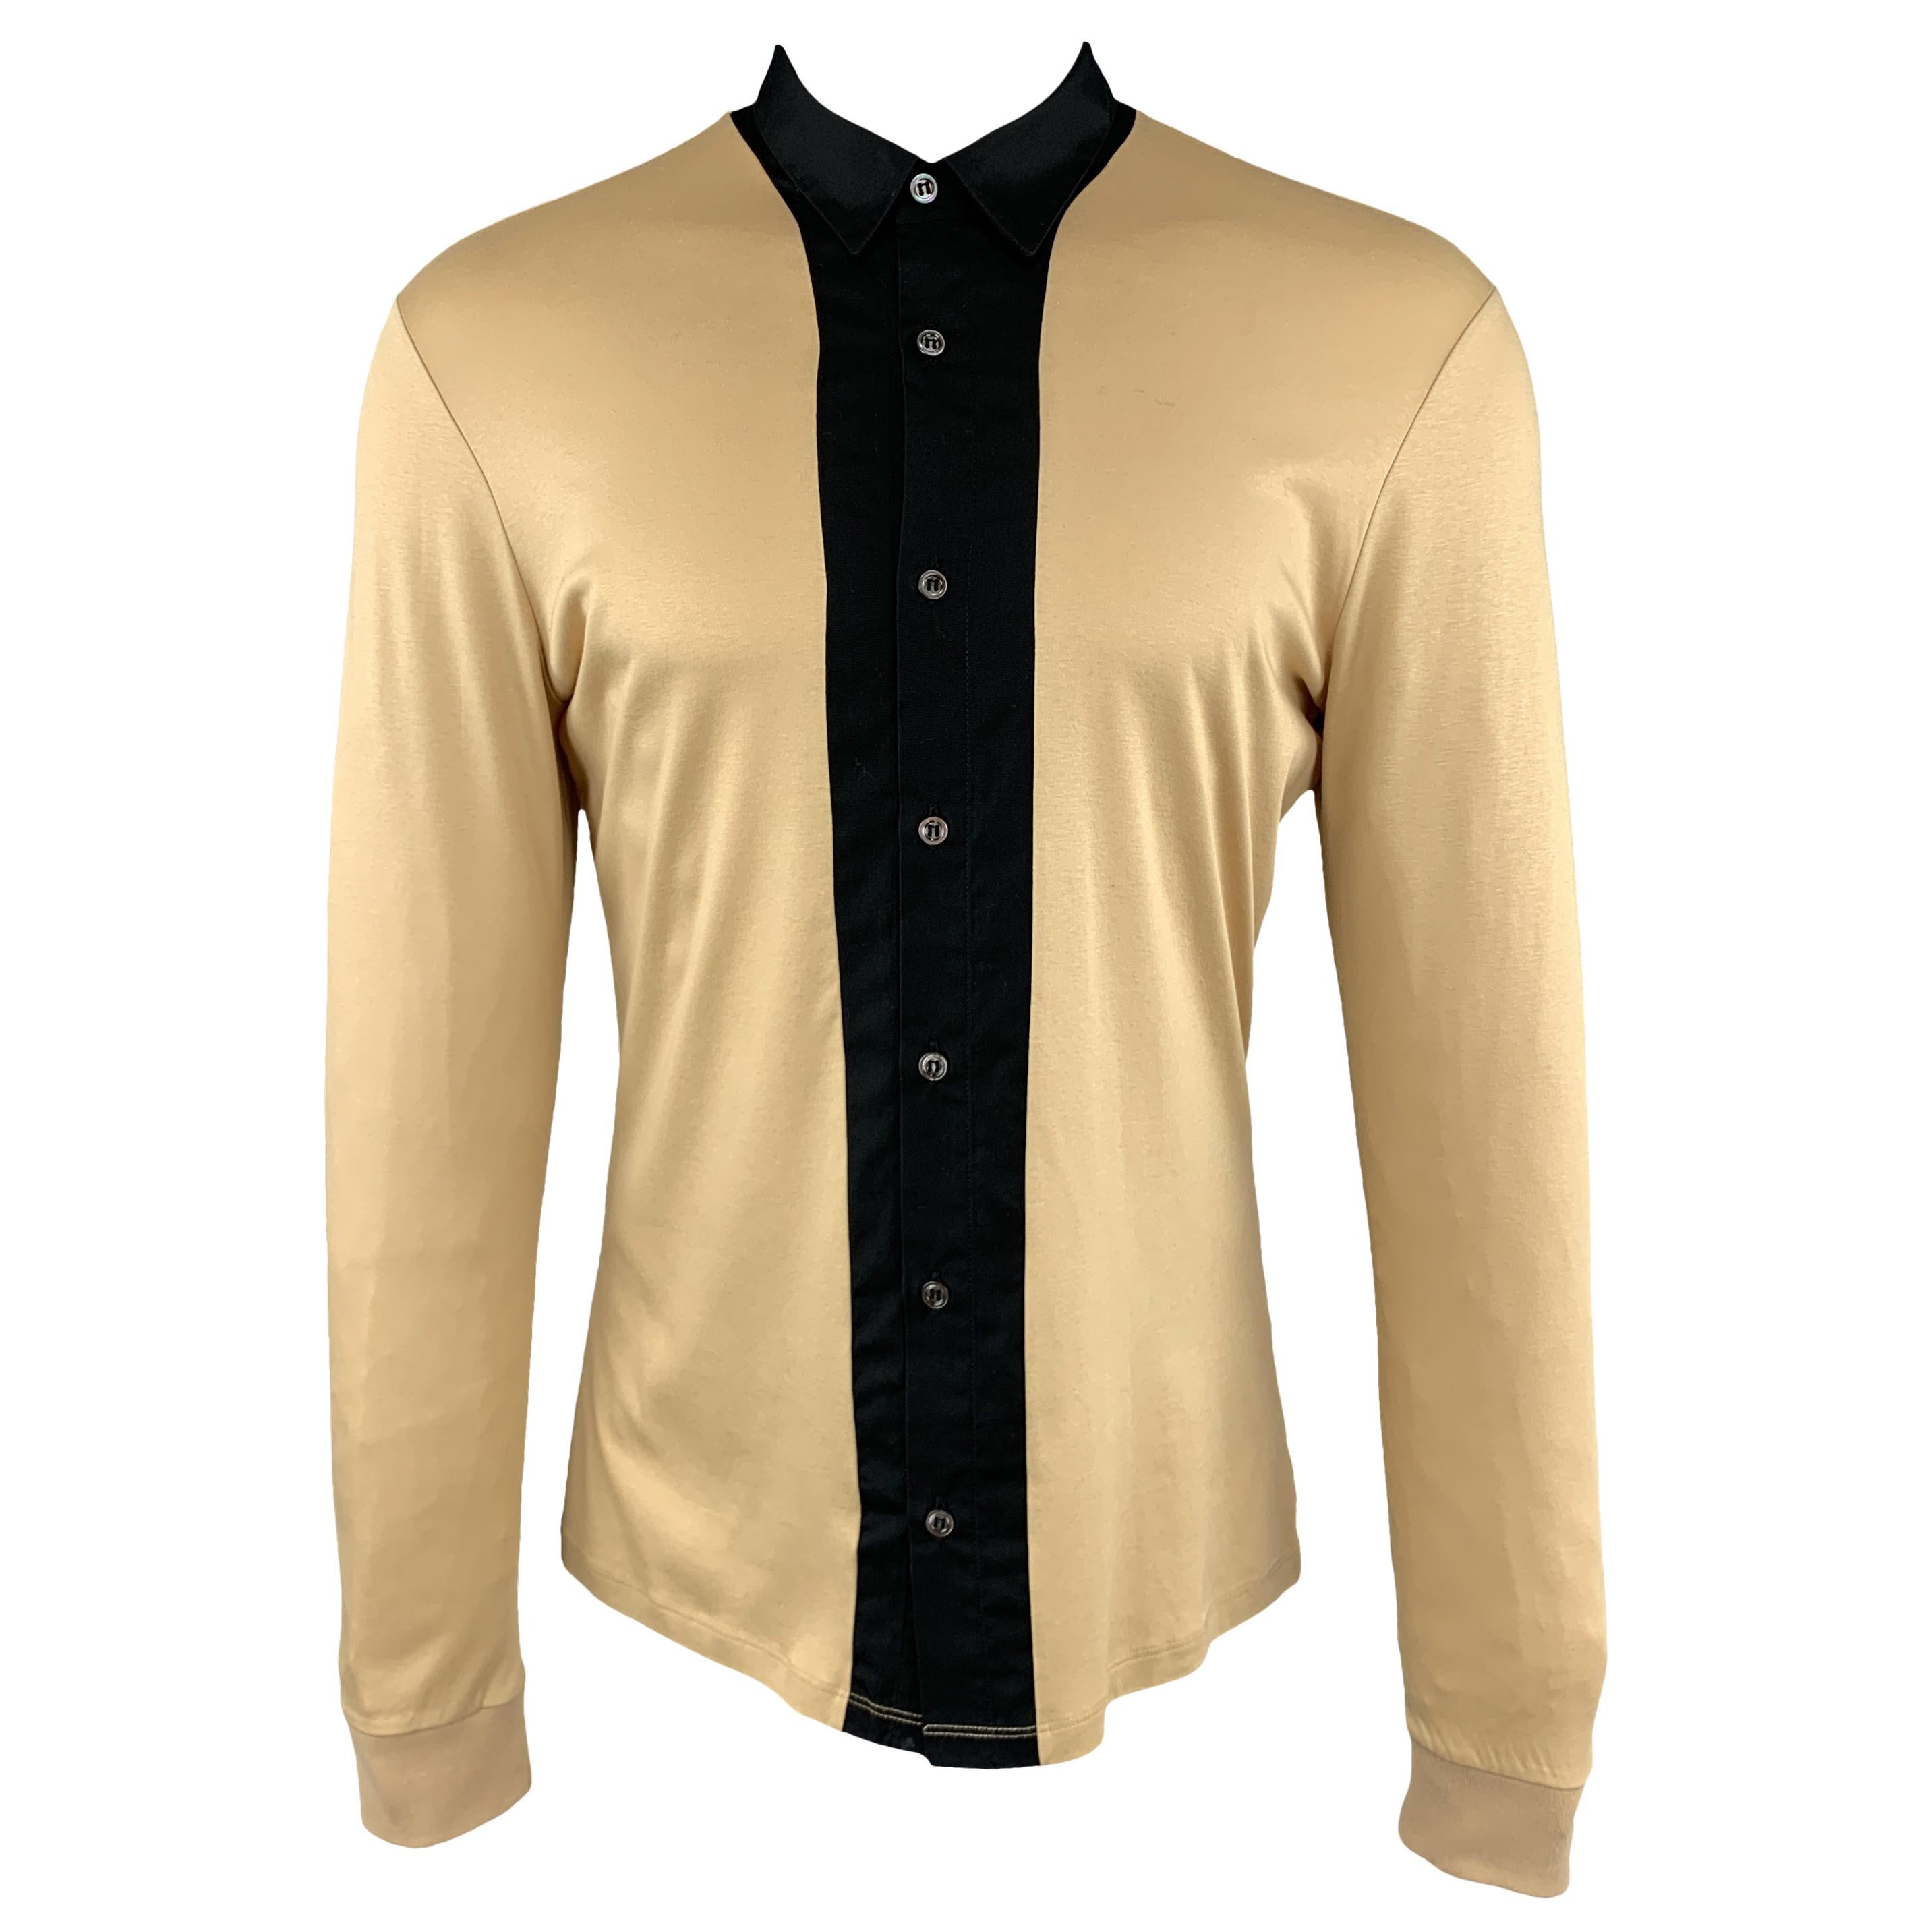 ALEXANDER MCQUEEN Size L Khaki & Black Color Block Cotton Long Sleeve Shirt